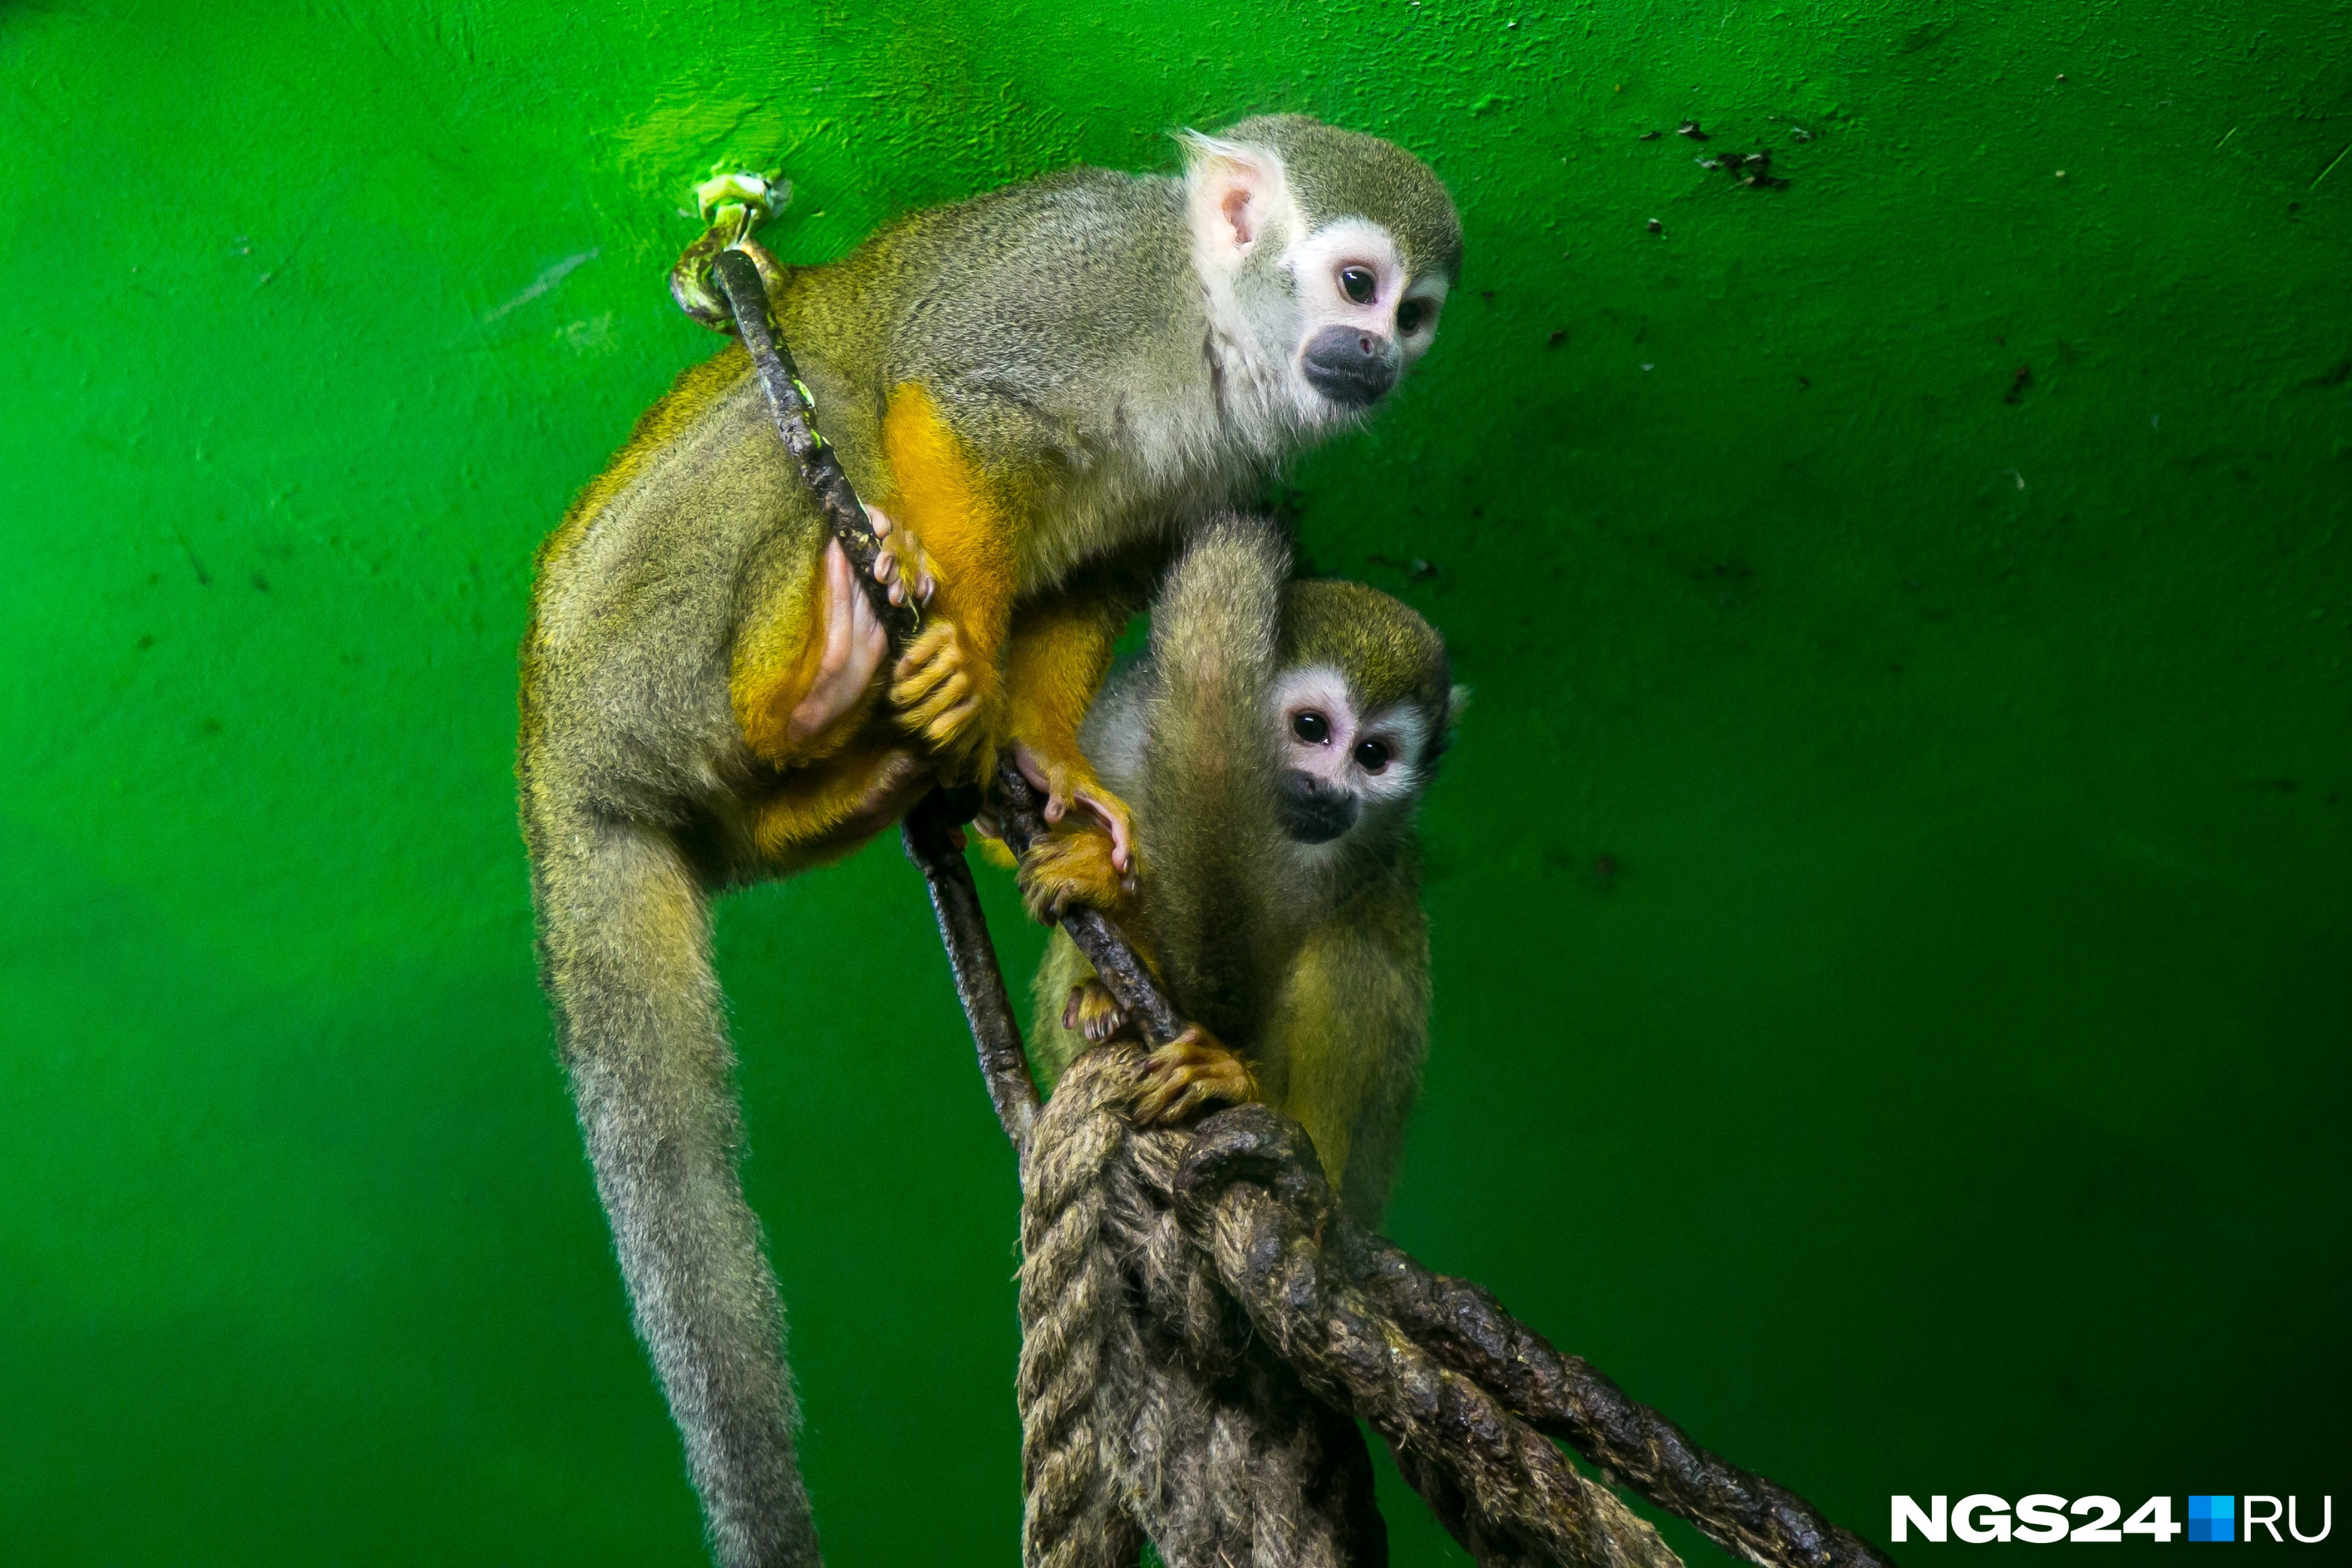 У обезьянок саймири матриархат, поэтому их часто отсаживают друг от друга, чтобы было больше потомства